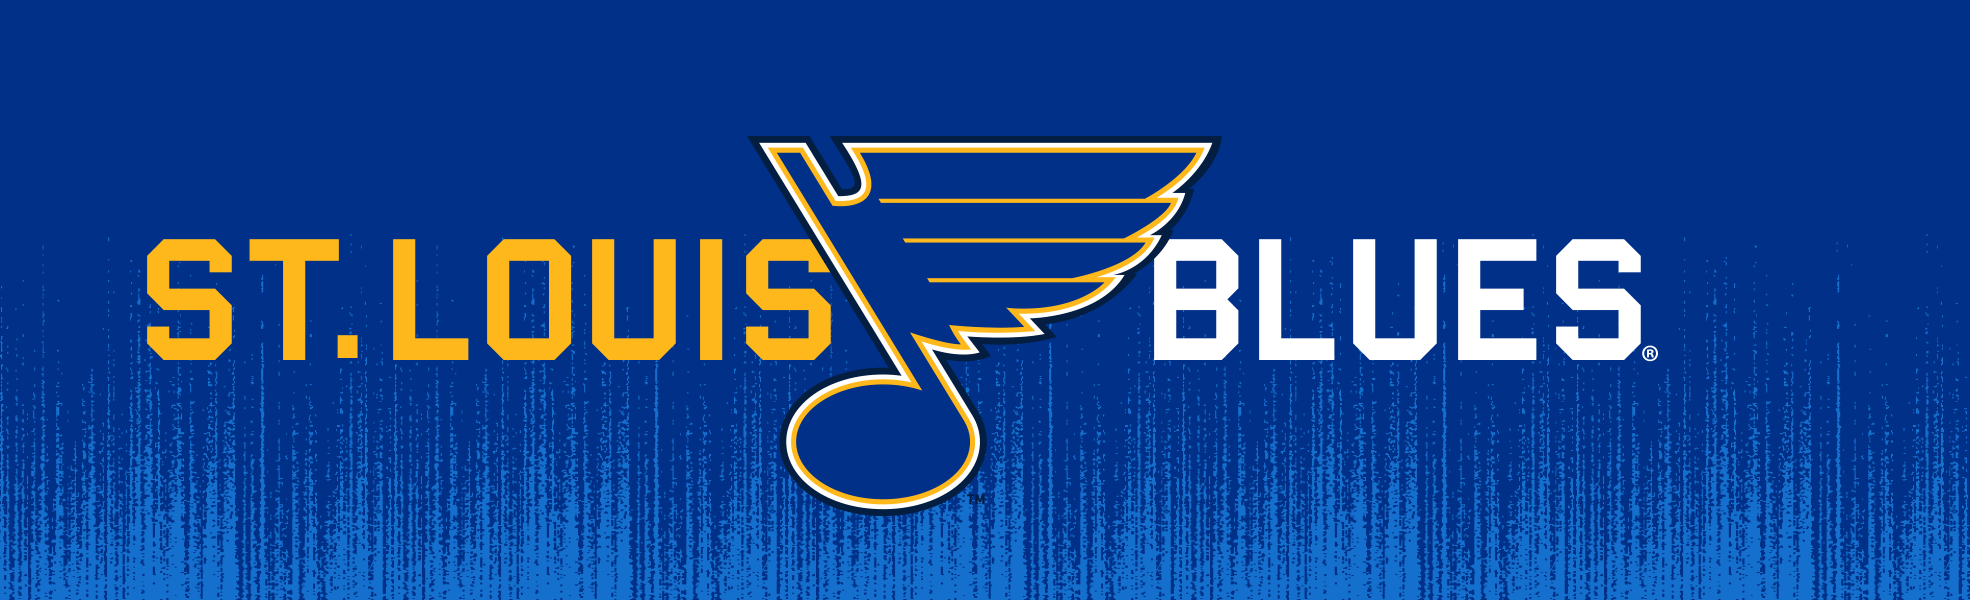 St. Louis Blues Hockey Earrings